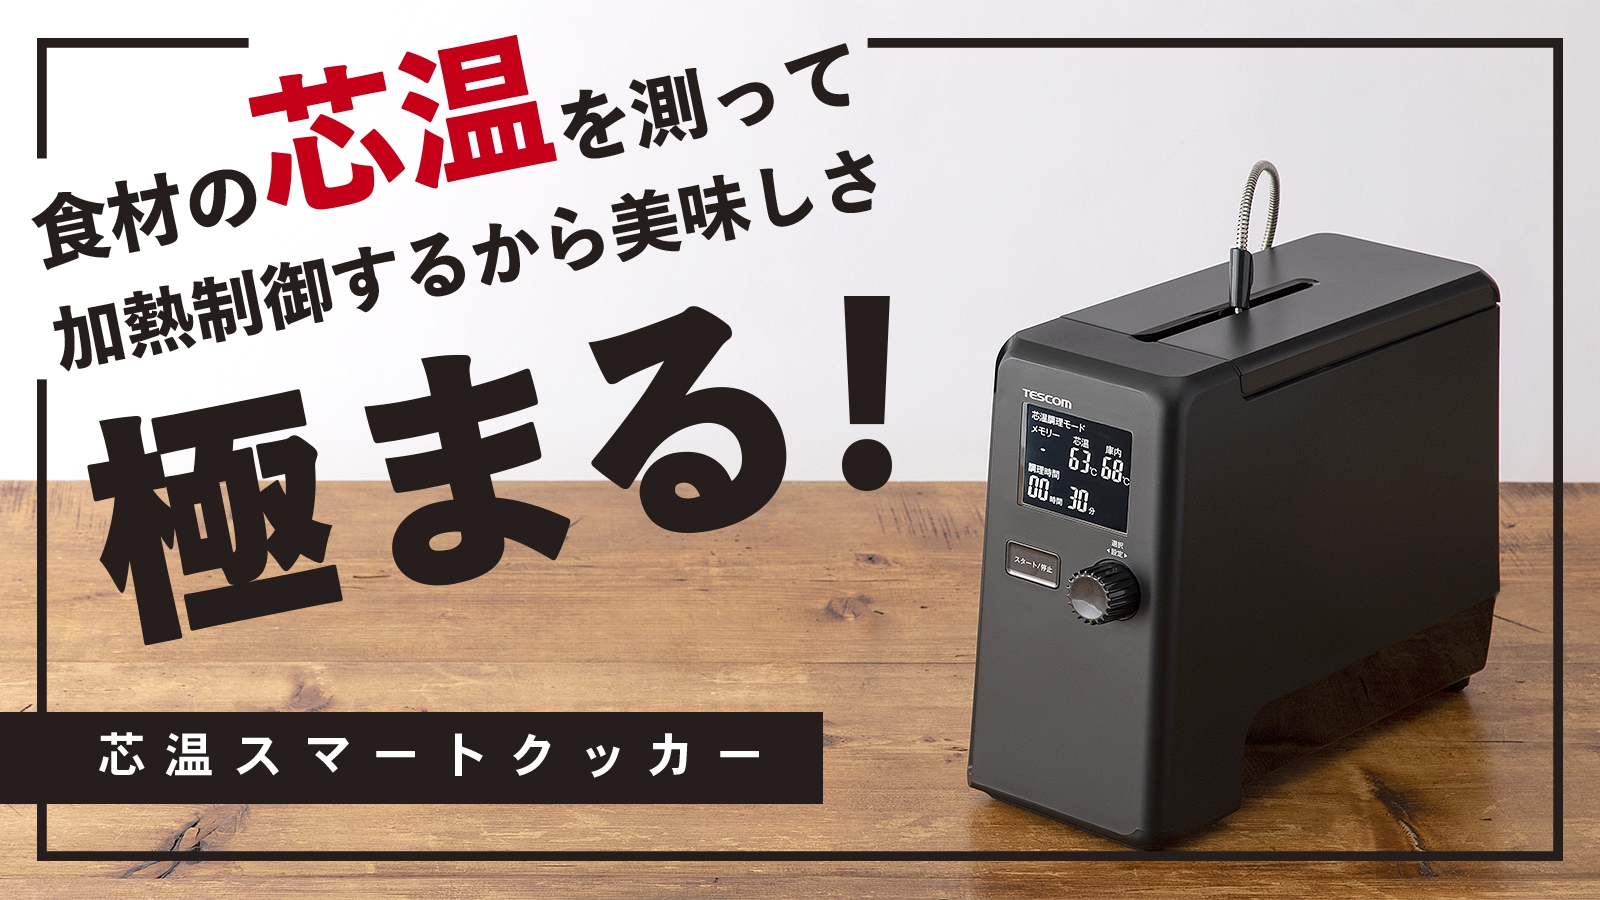 食材の“中心温度”を測って調理する日本初※1の低温調理器「芯温スマート 